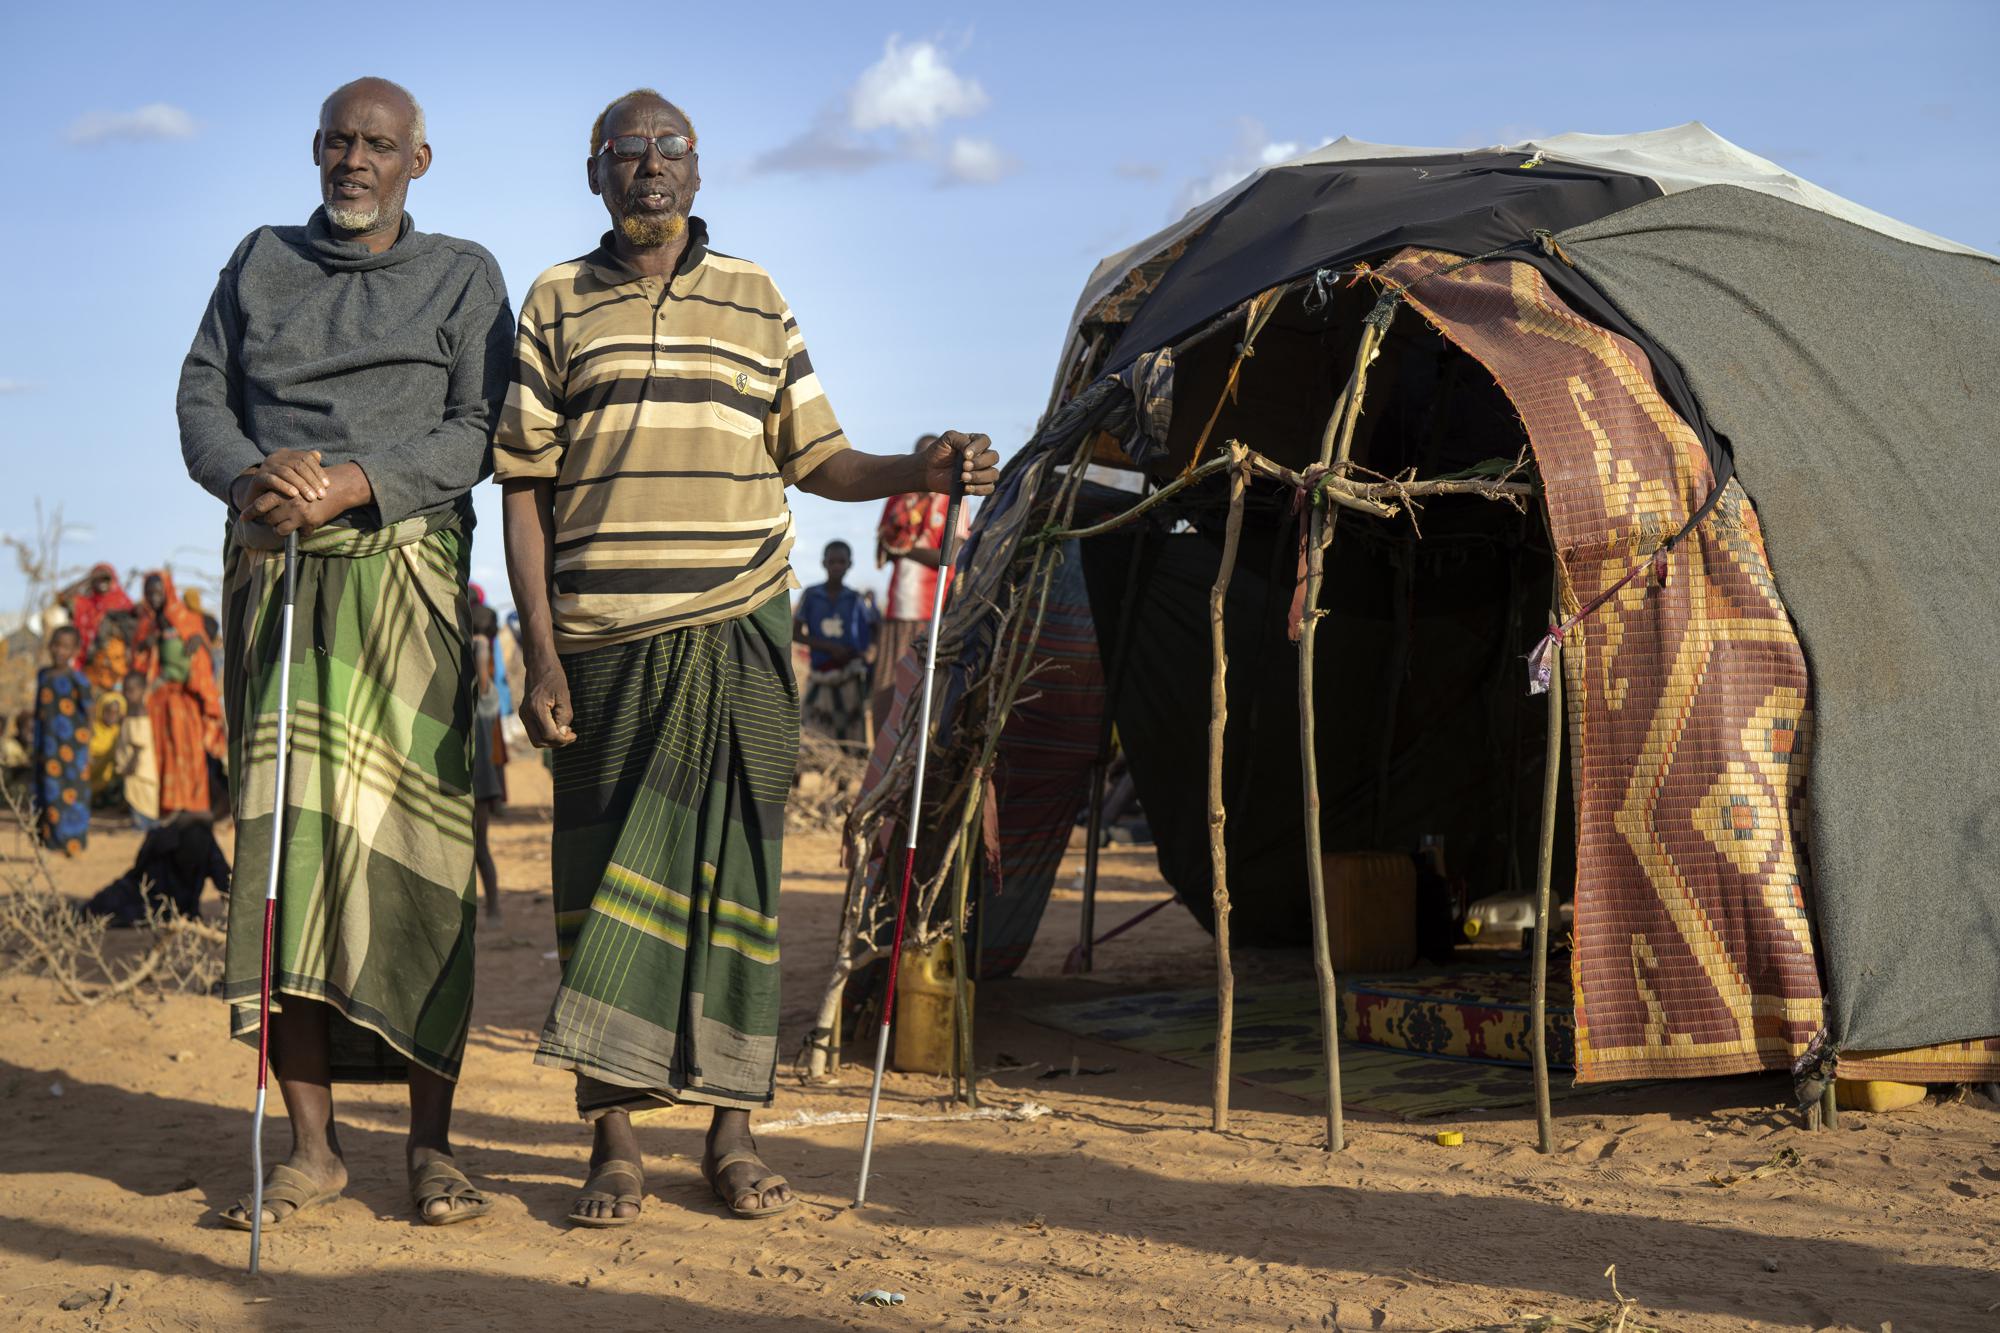 Mohamed Kheir Issack, 80 tuổi (bên phải) và Issack Farow Hassan, 75 tuổi (bên trái) đang đứng trước căn lều tạm bợ ở khu trại tập trung dành cho những người tị nạn đang chạy trốn khỏi Somali - Ảnh: Jerome Delay/AP